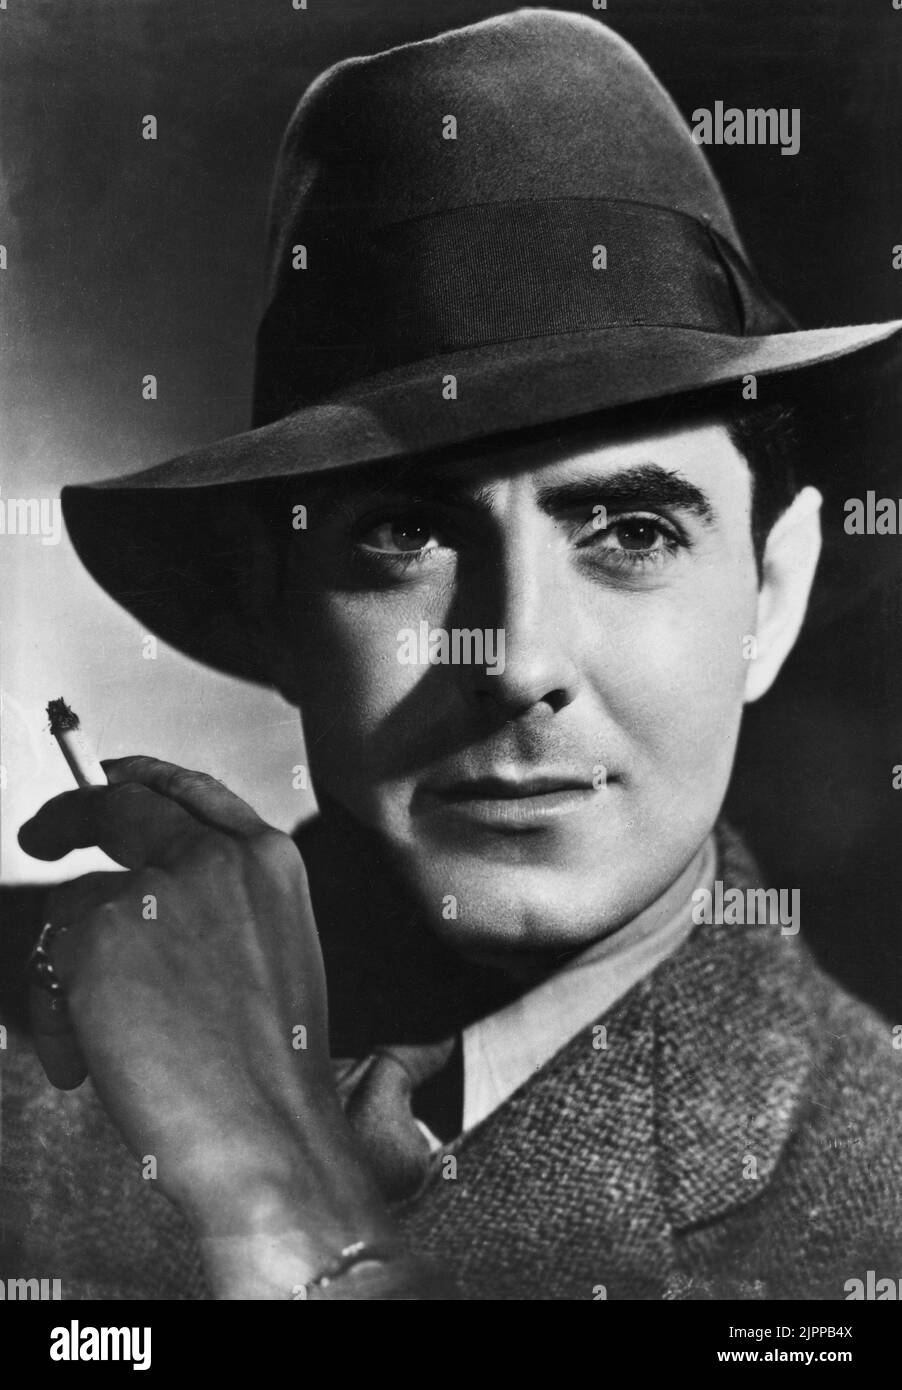 1951 ca. : the  movie actor  TYRONE POWER ( 1914 - 1958 )   - CINEMA - portrait - ritratto - sigaretta - cigarette - sex symbol - sex-symbol - personalità celebrità attori che fumano - fumatore - celebruity celebrities personality personalities actors smokers  - tie - cravatta - anello - ring - fedora - hat - cappello ----  Archivio GBB Stock Photo